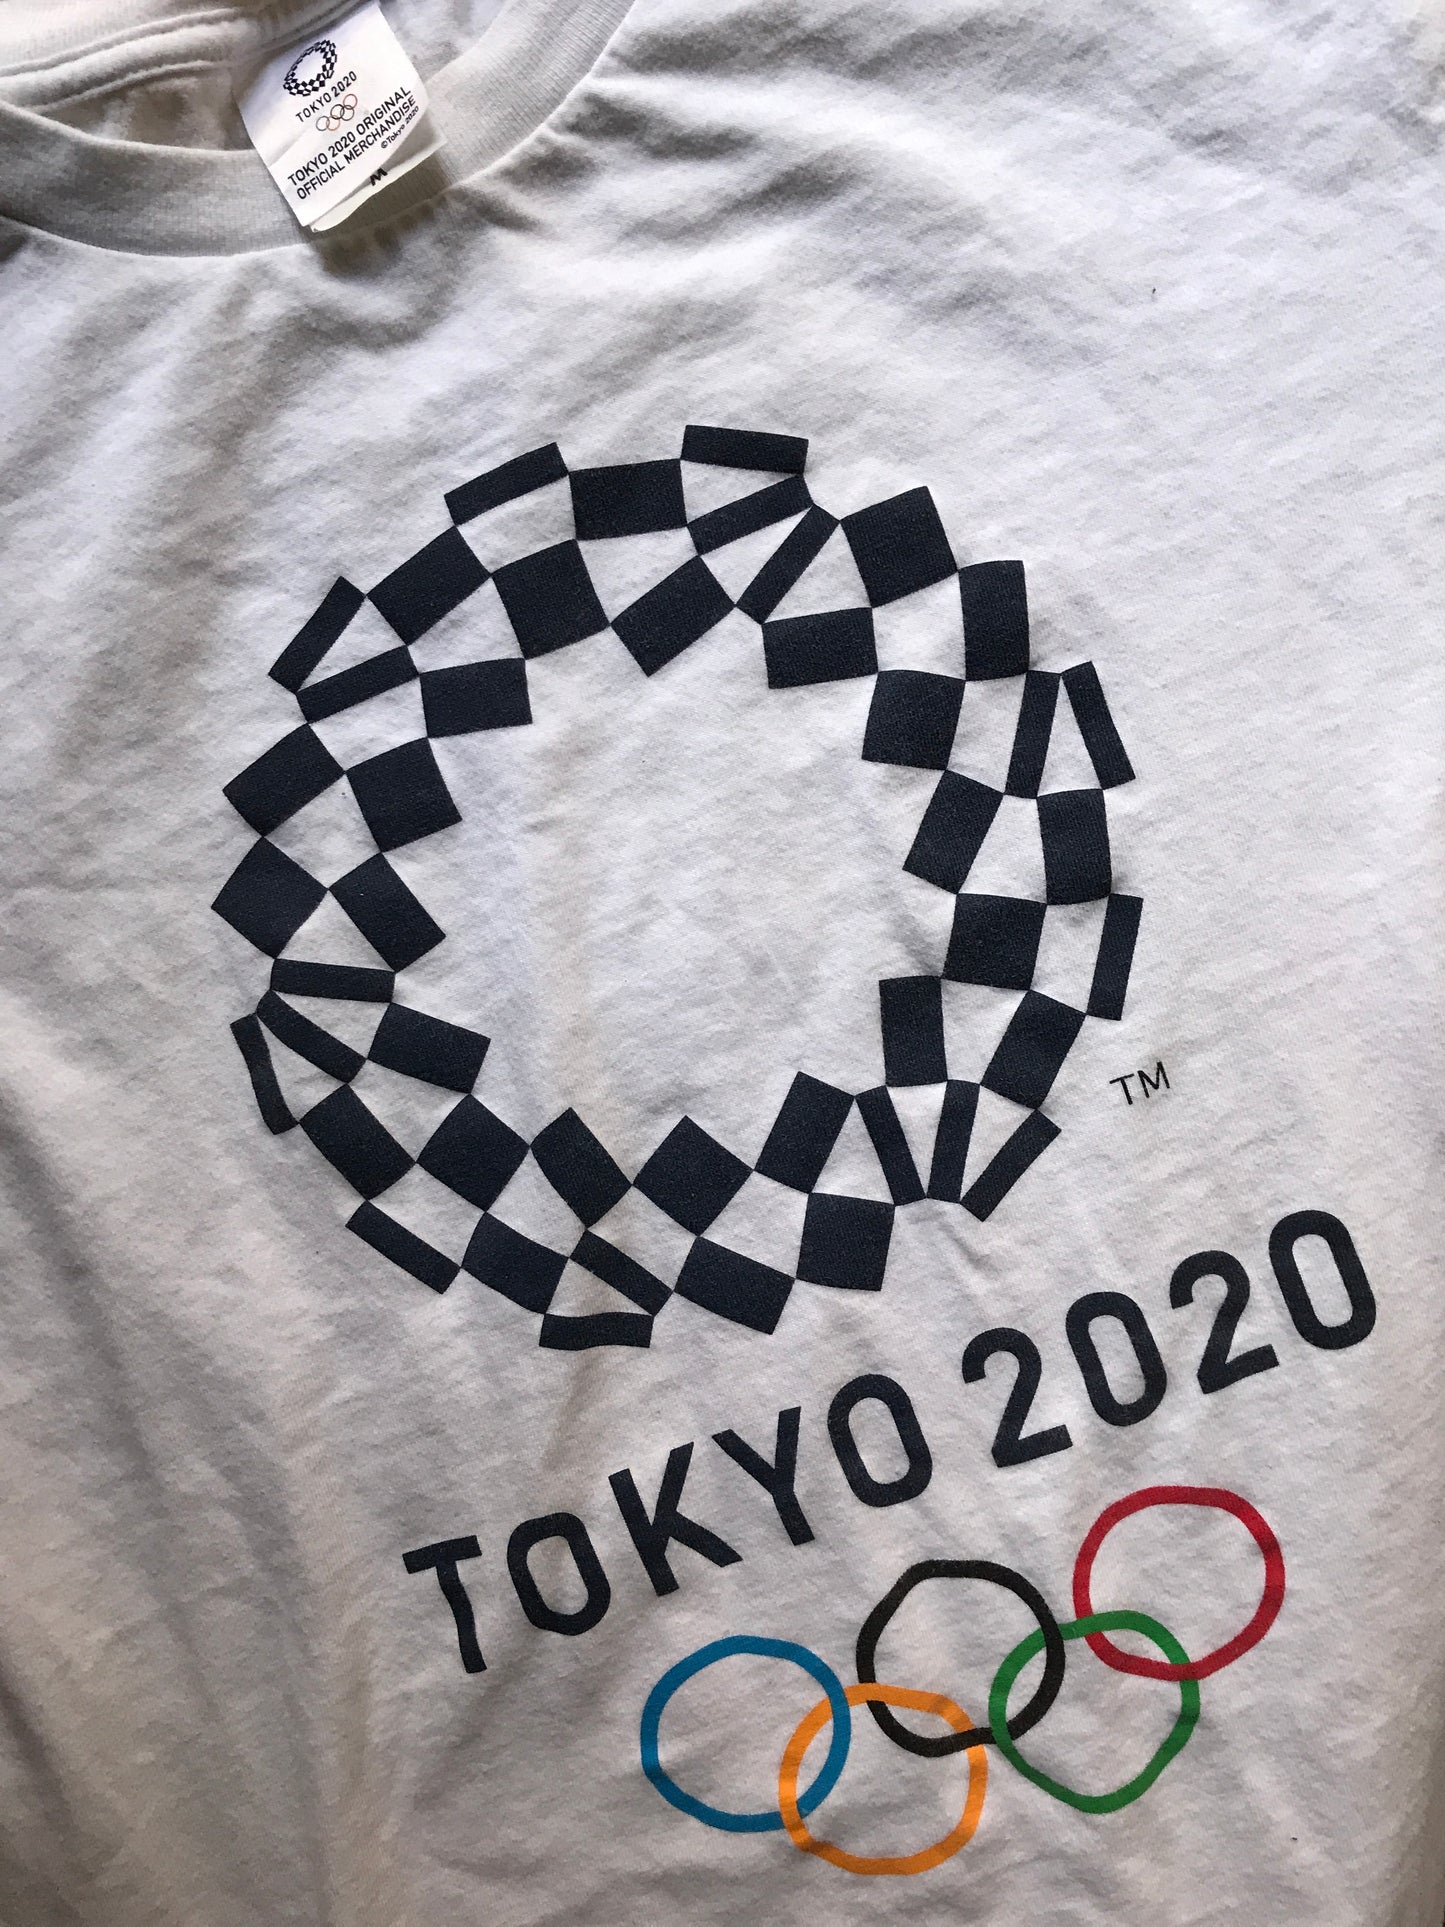 Playera Tokyo 2020